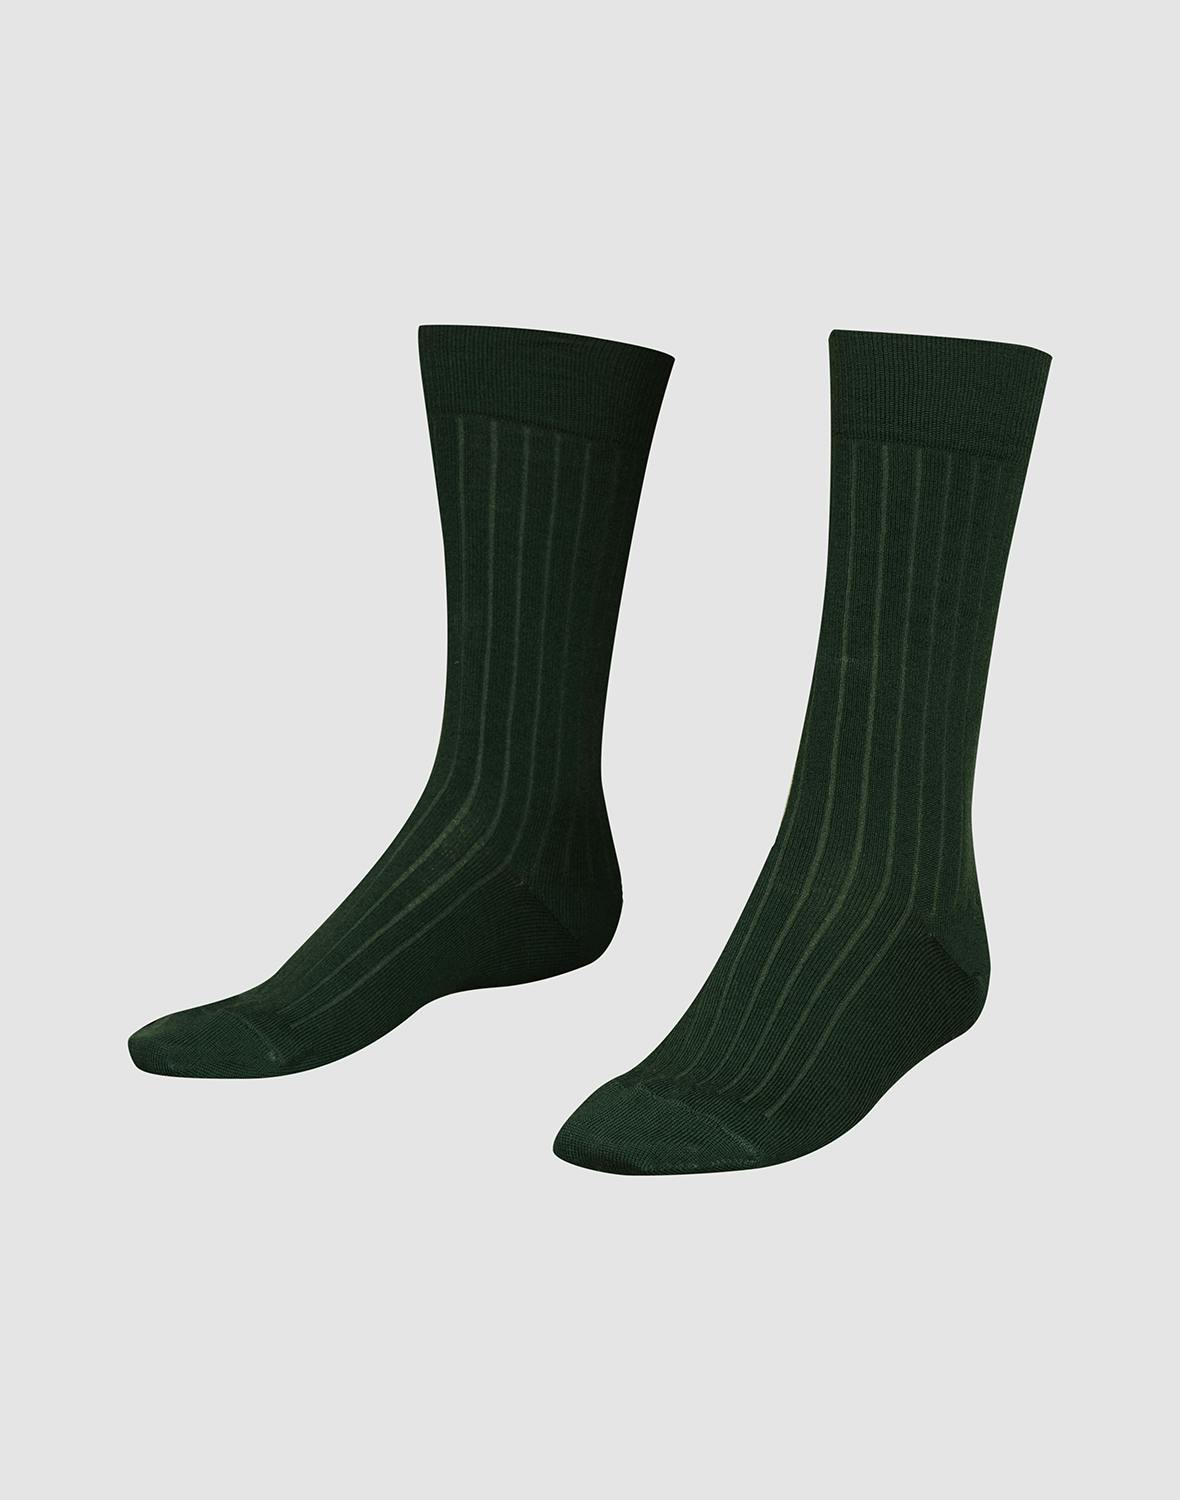 Chaussettes pour homme en laine mérinos - Vert sapin - Dilling